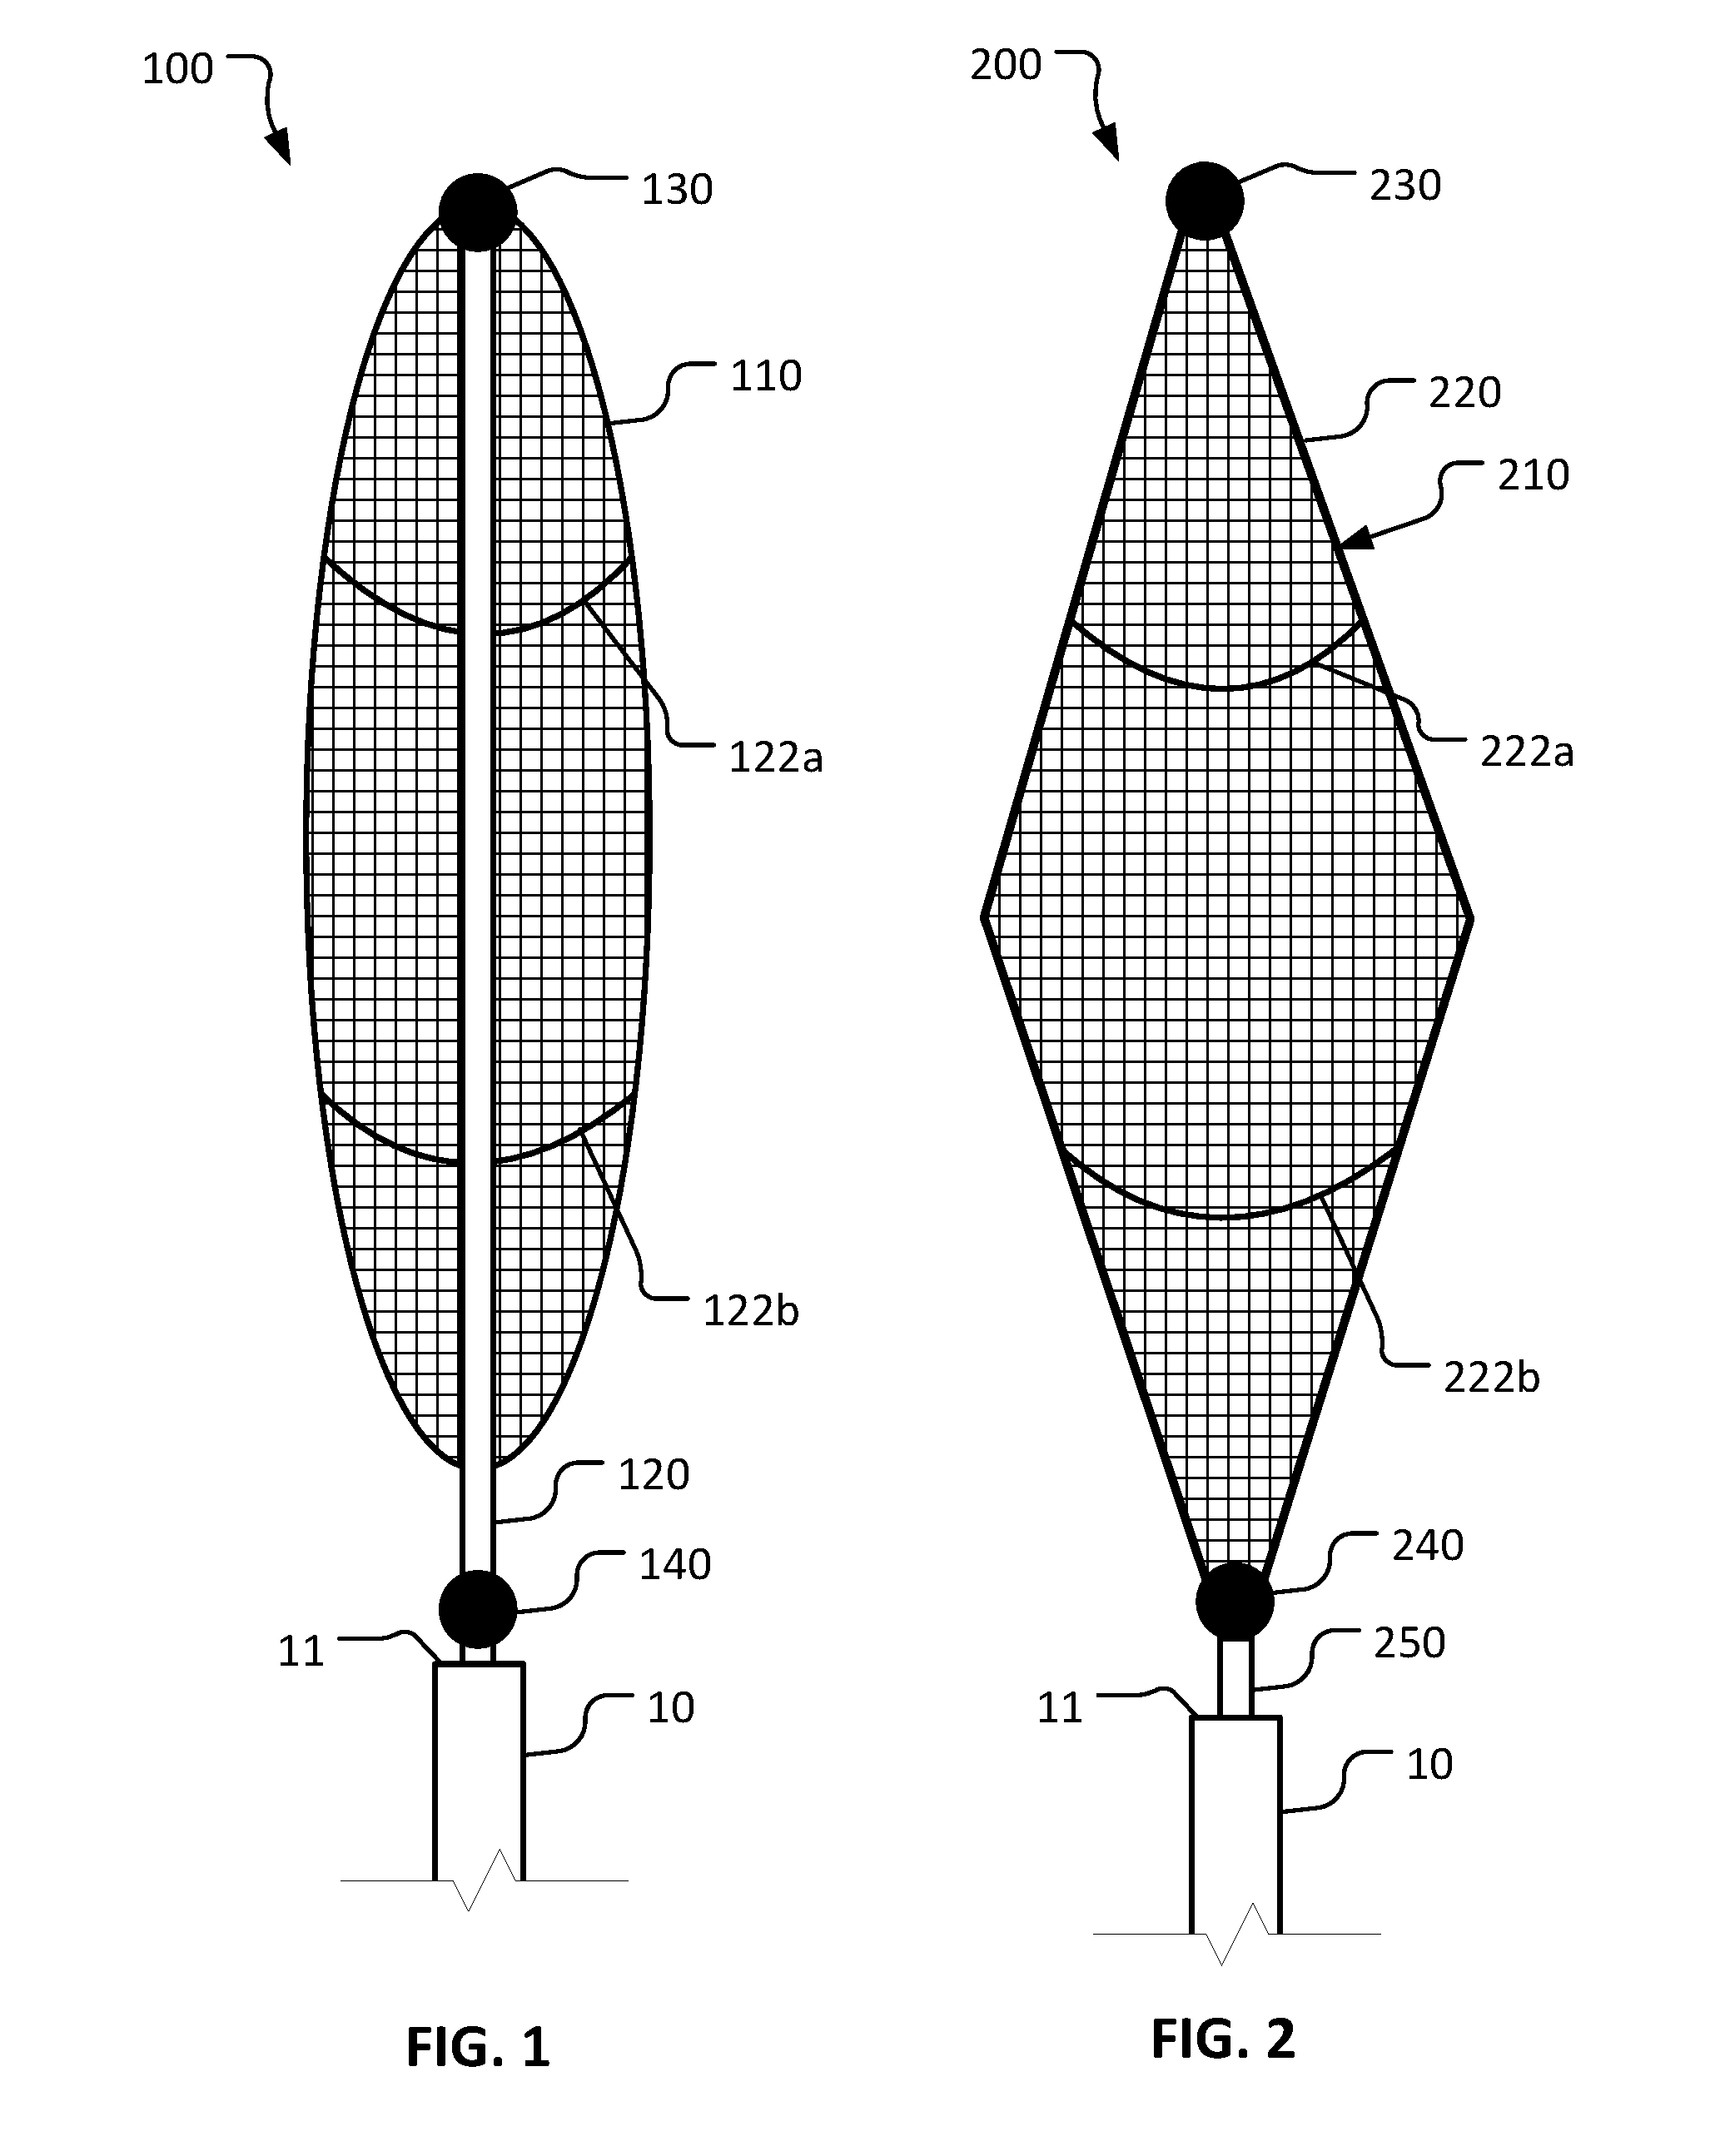 Laparoscopic retractor devices